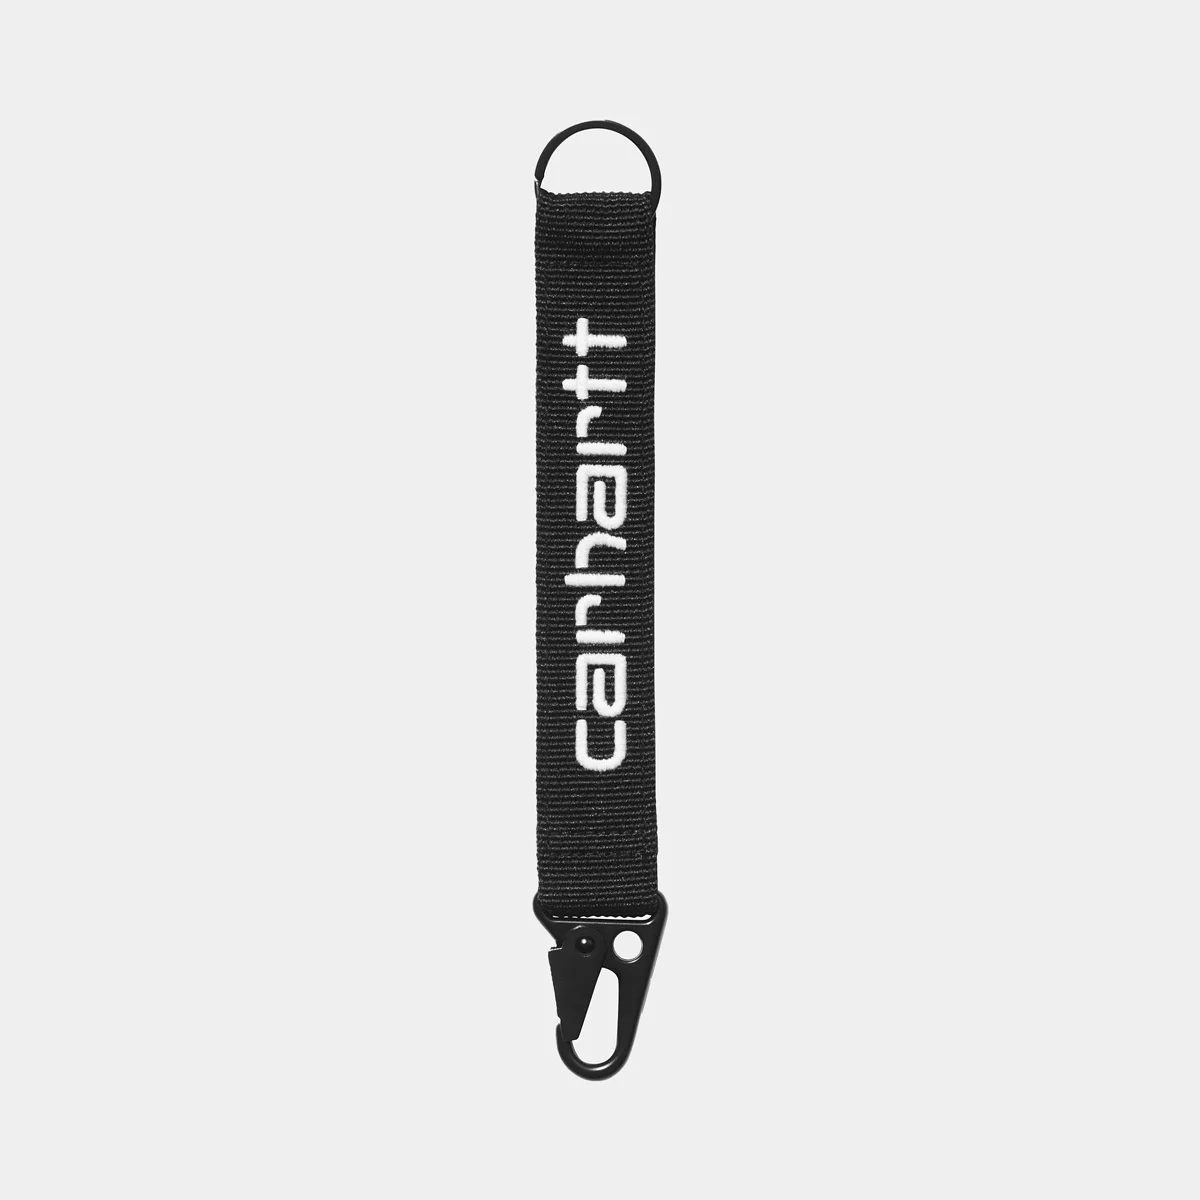 Carhartt WIP Jaden Key Holder - Black/White